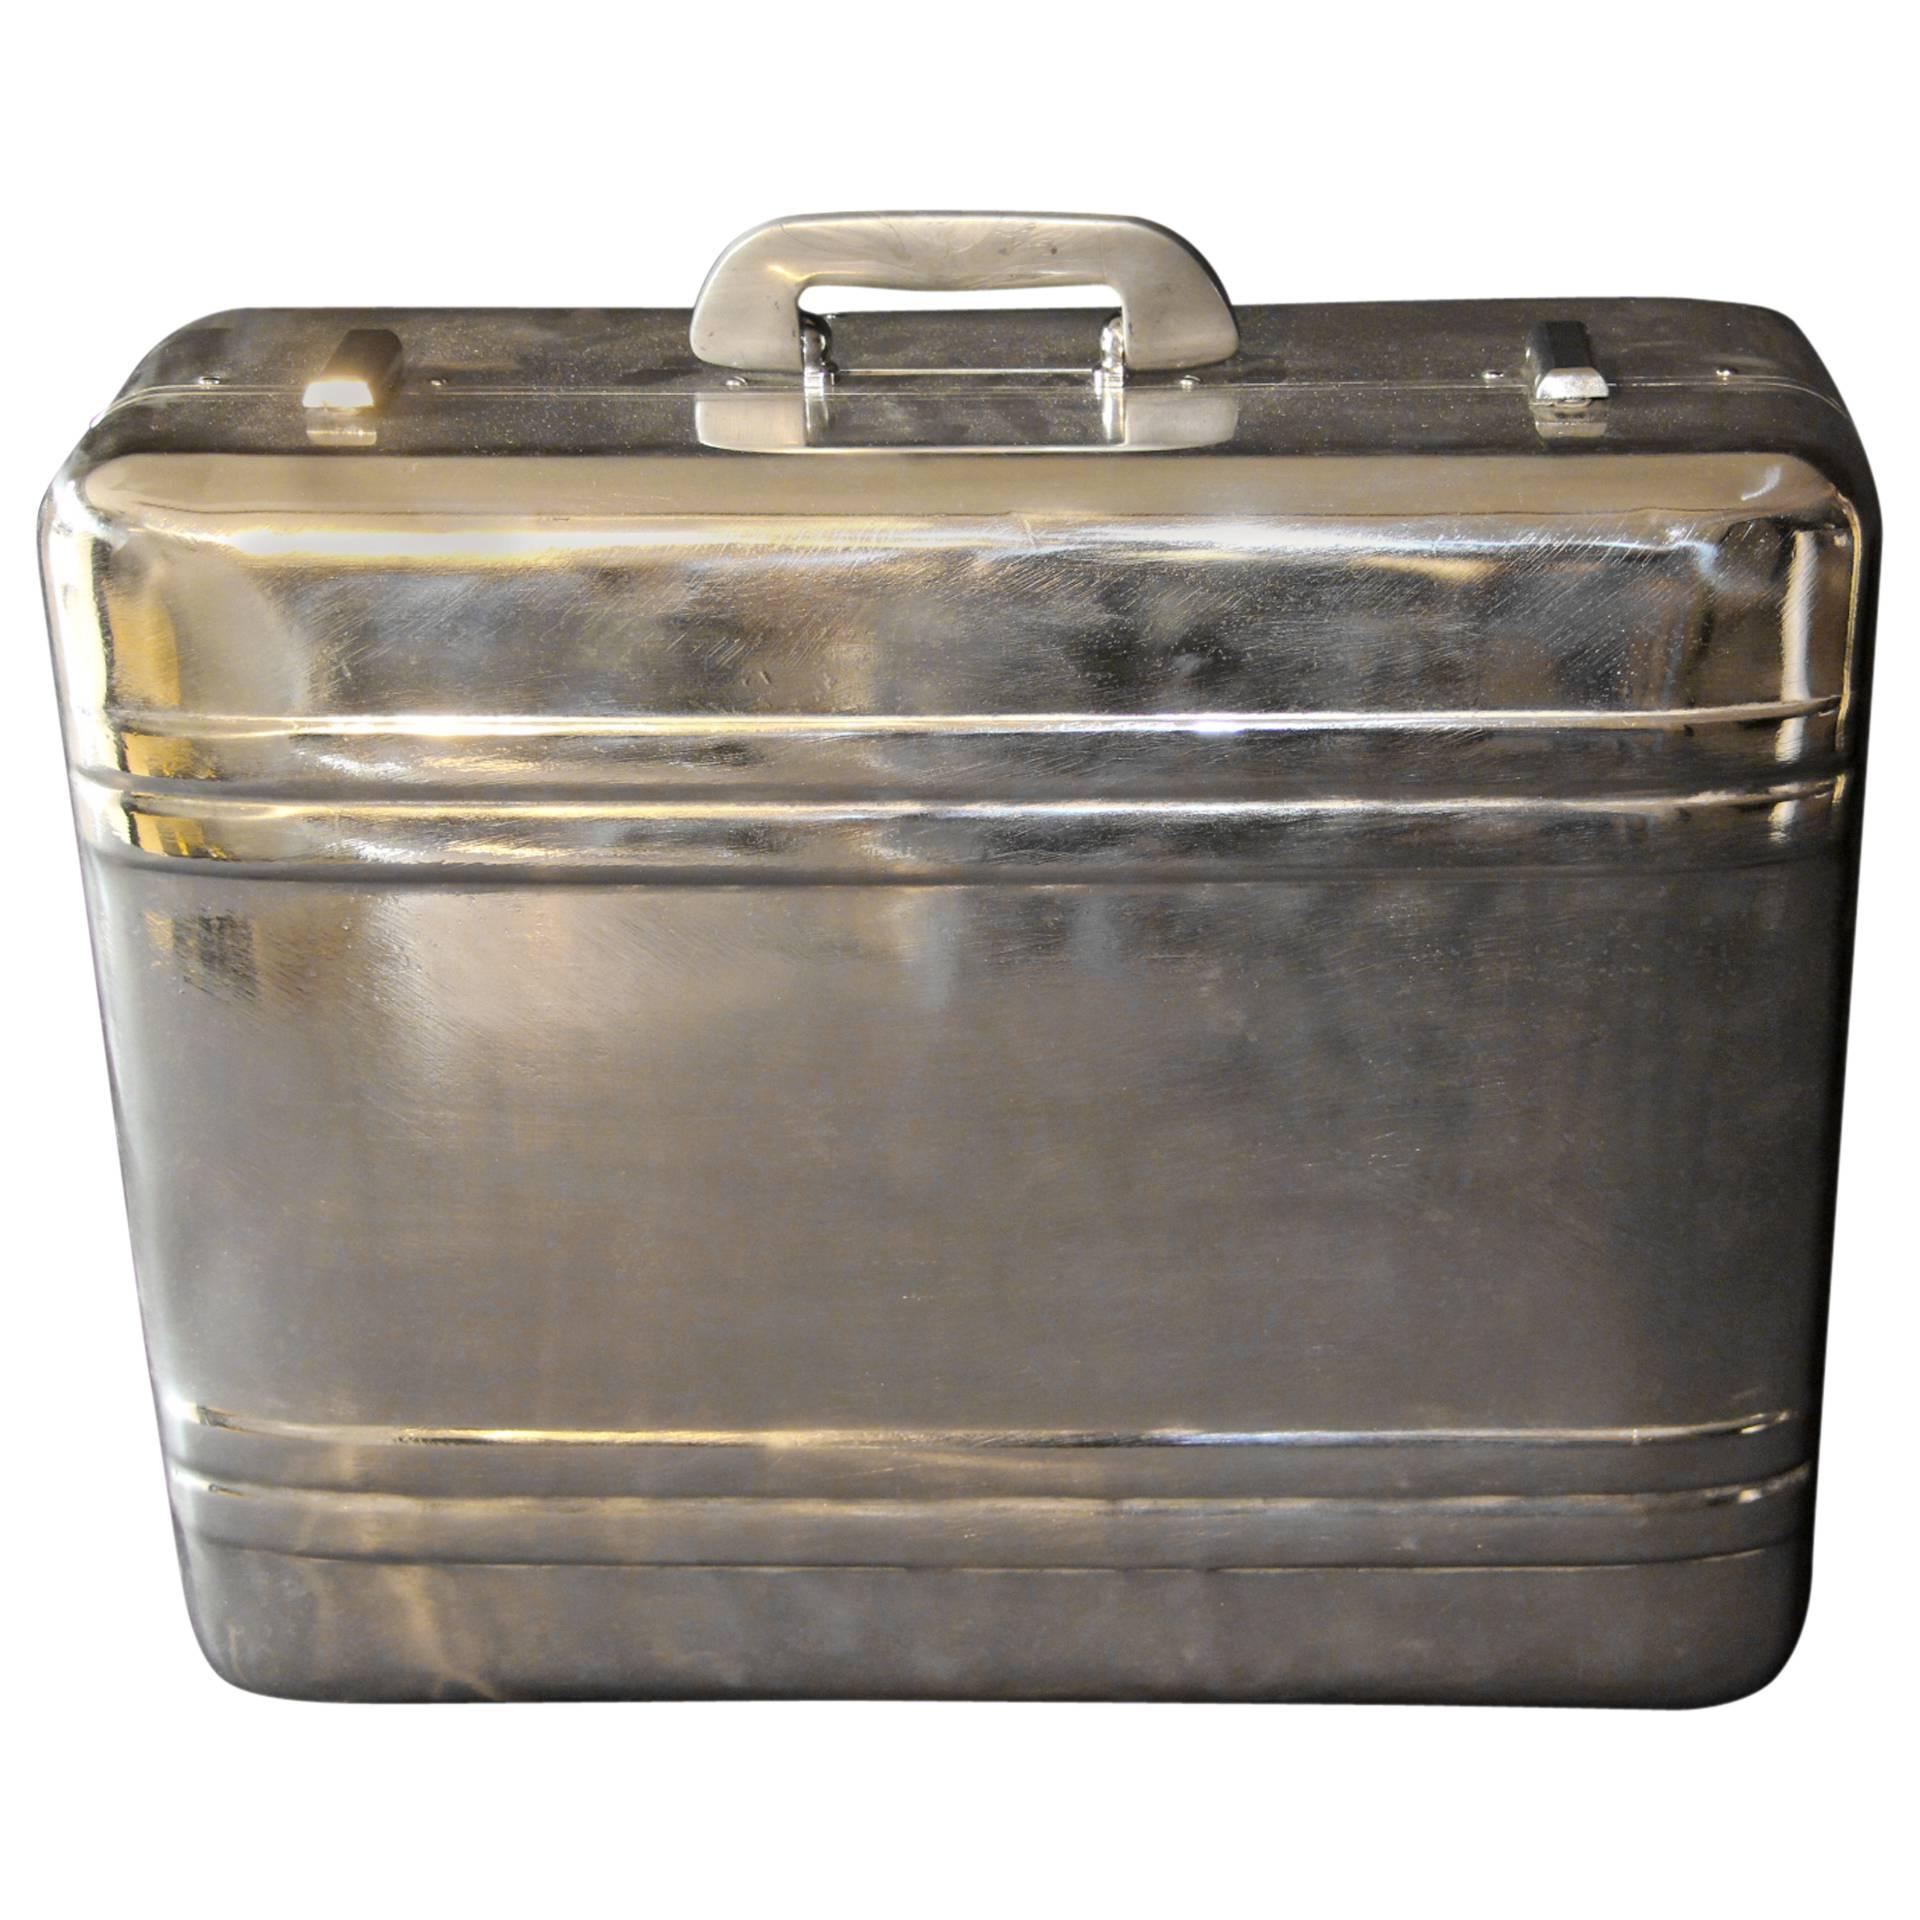 1940s Polished Aluminum Suitcase by Halliburton